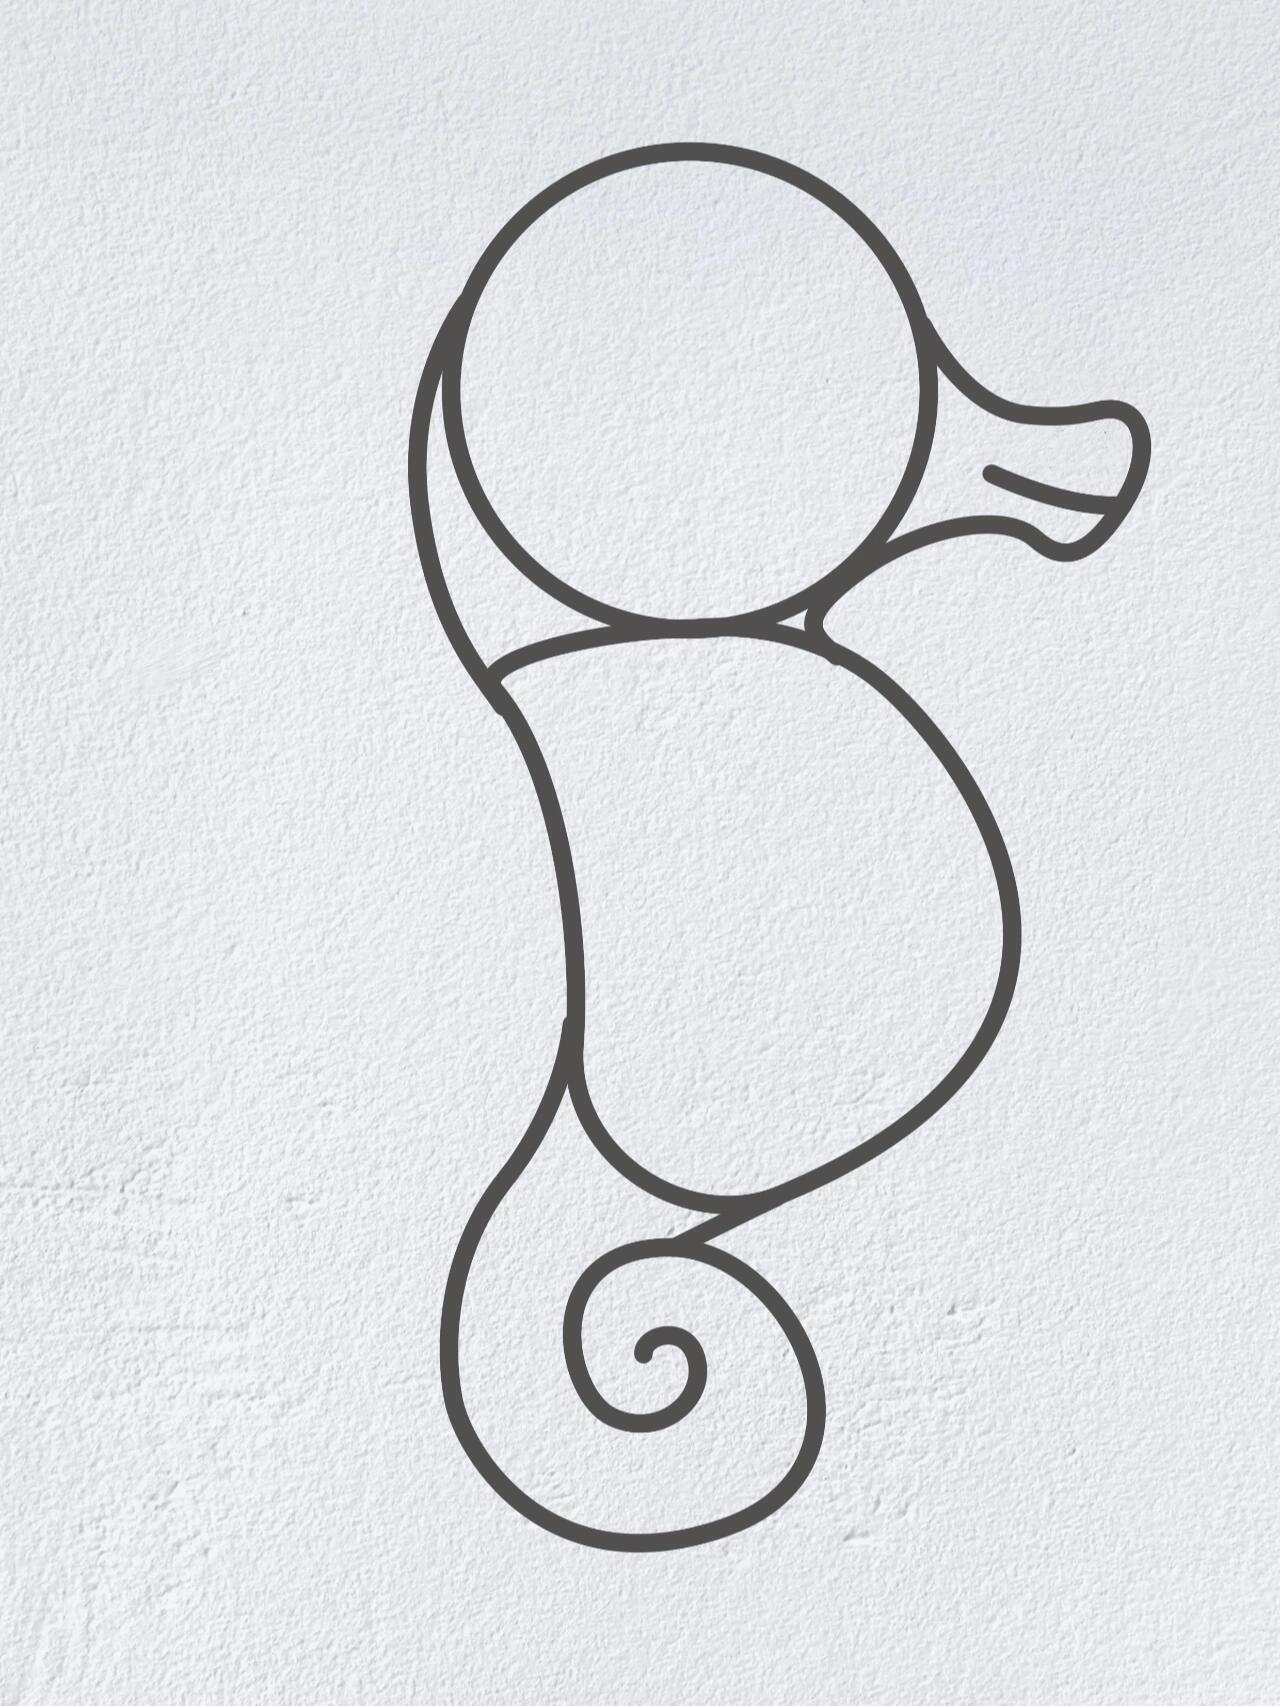 动物简笔画之可爱的小海马